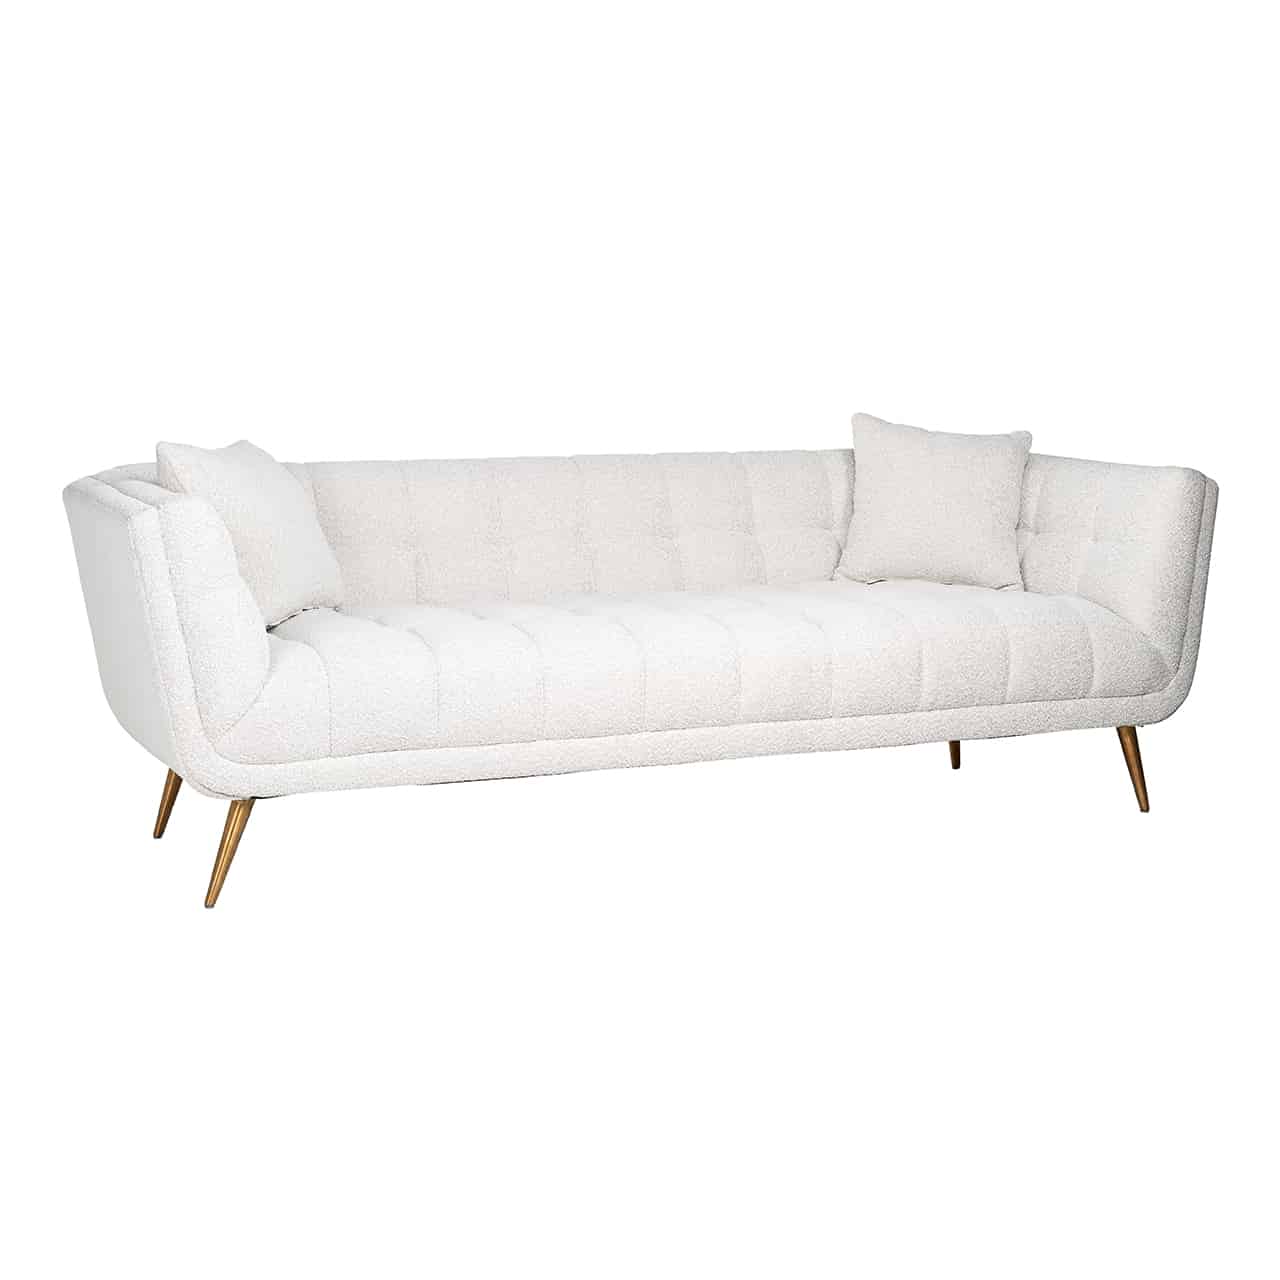 Modernes Sofa in weiß mit umlaufender Lehne, Innenseite mit quadratischer, Steppung; in beiden Ecken je ein quadratisches Kissen; Beine in matt gold, leicht nach außen stehend und nach unten spitz zulaufend.